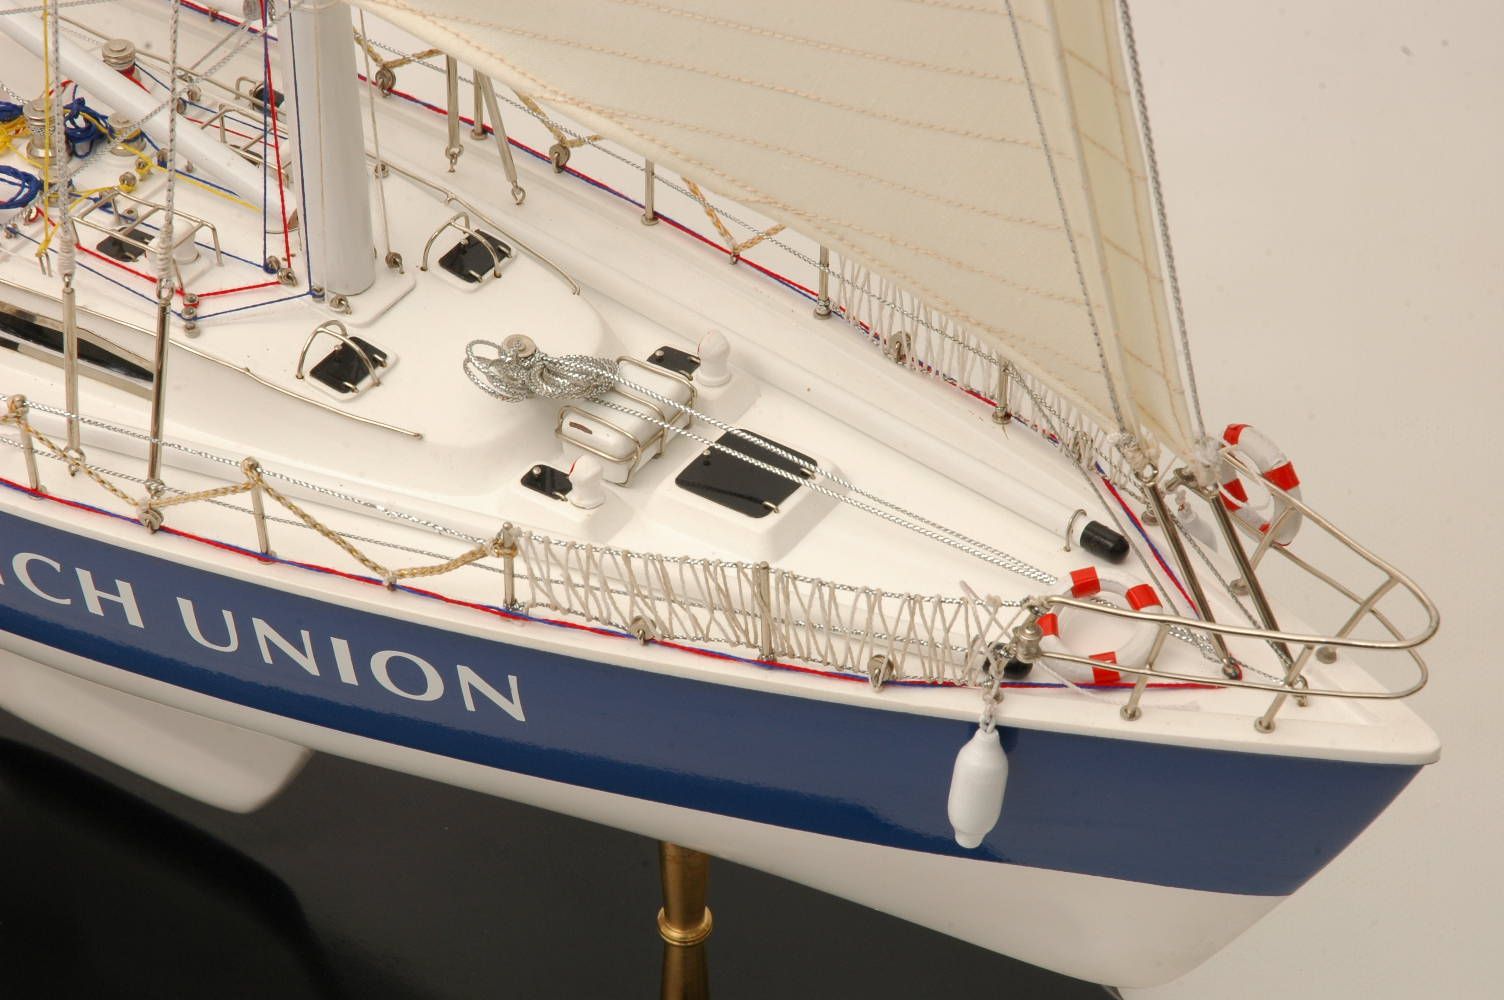 Norwich Union model yacht